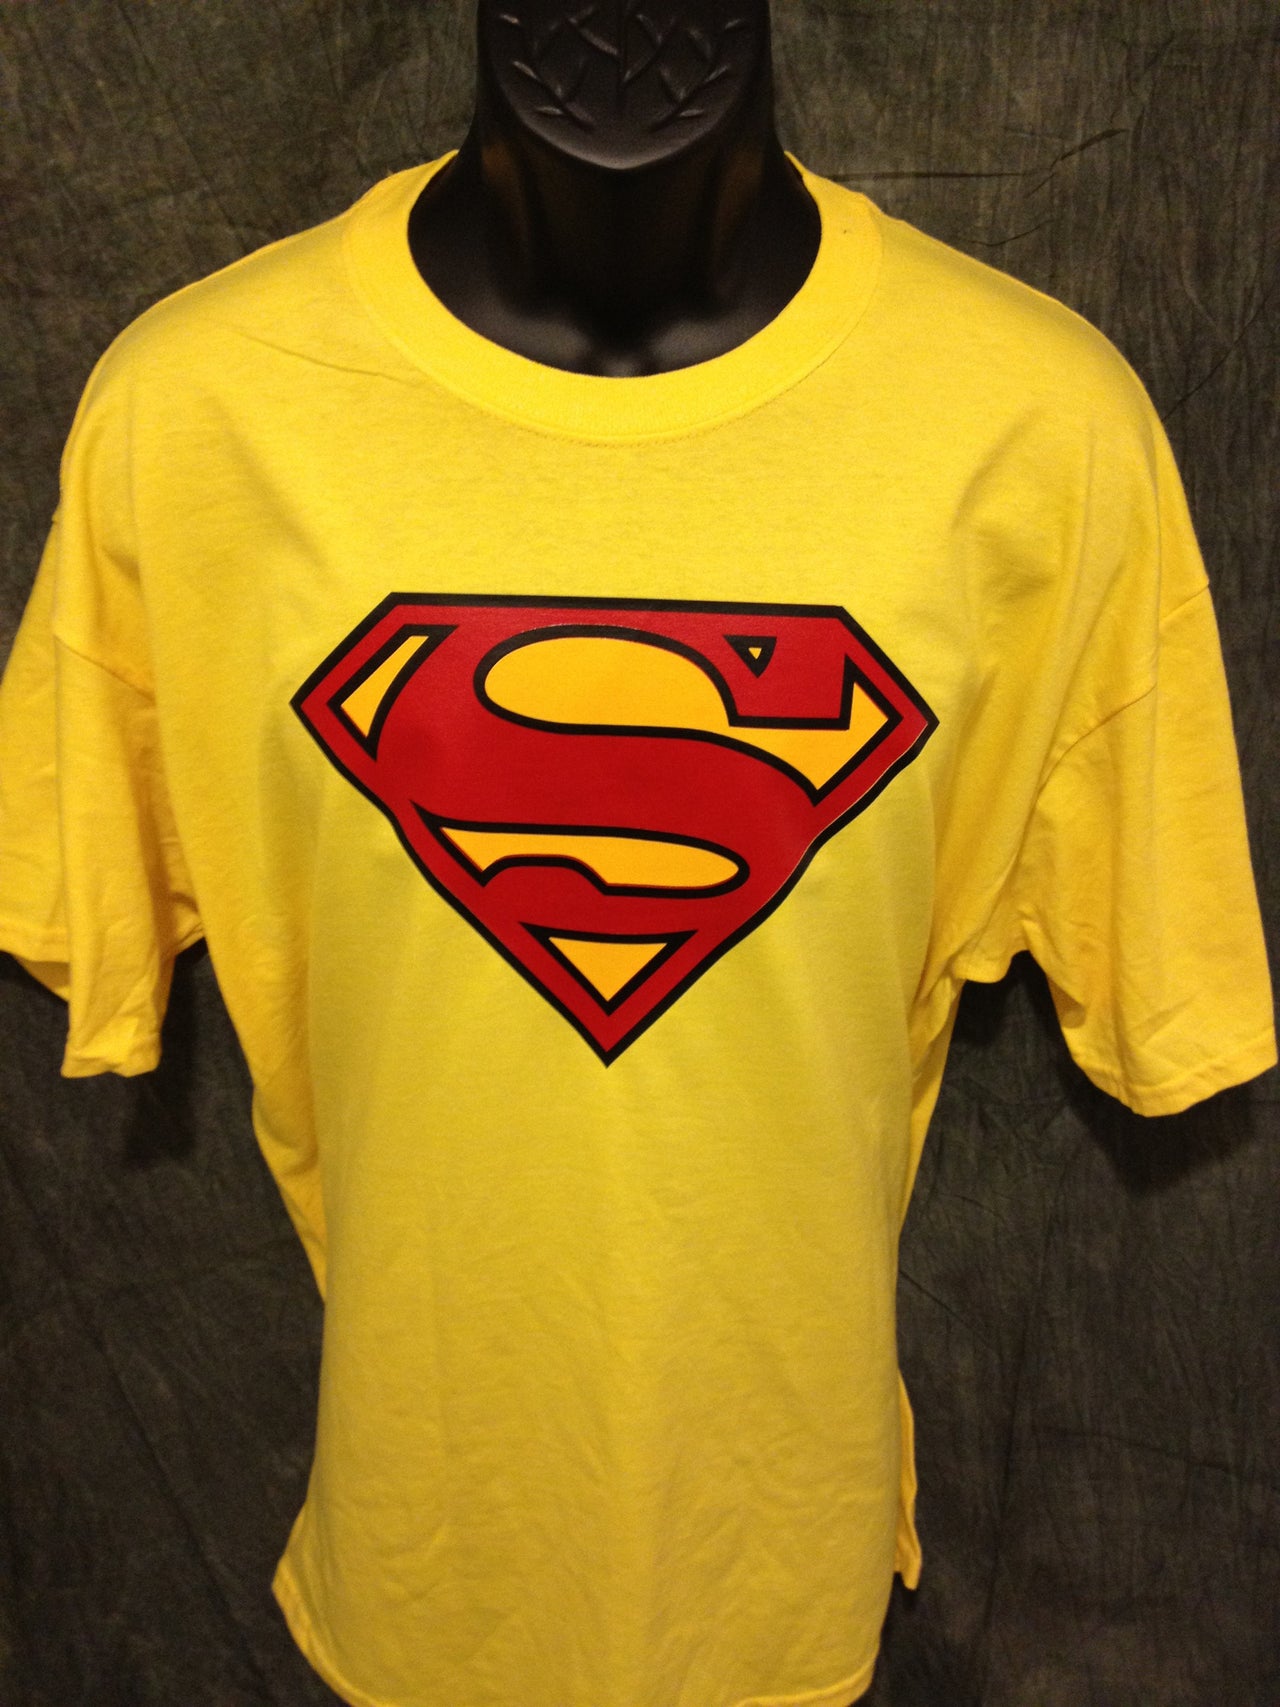 Superman Classic Logo Yellow Tshirt - TshirtNow.net - 4